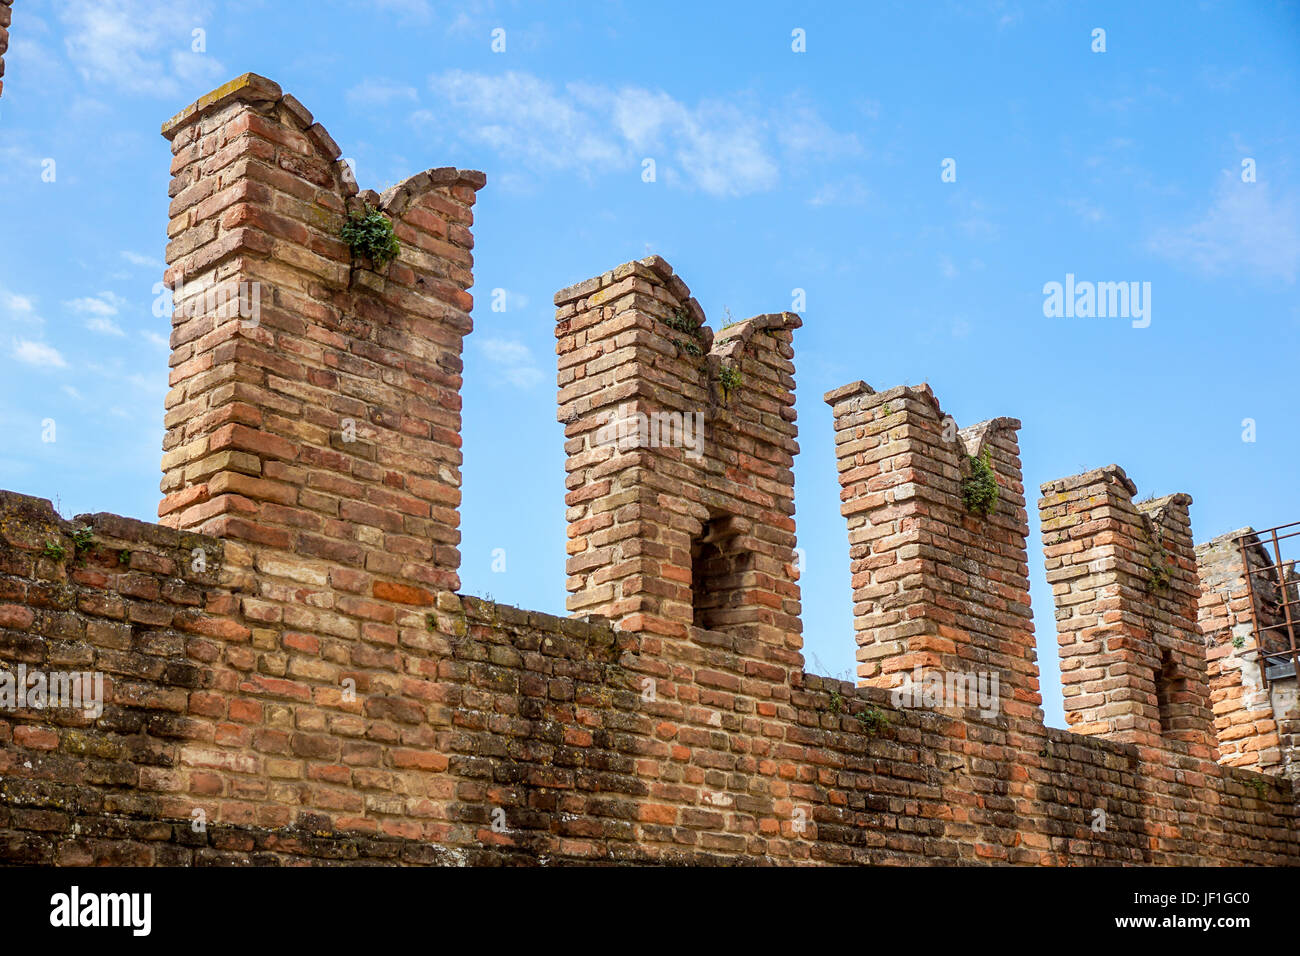 Detalle de una antigua muralla del castillo medieval. Foto de stock